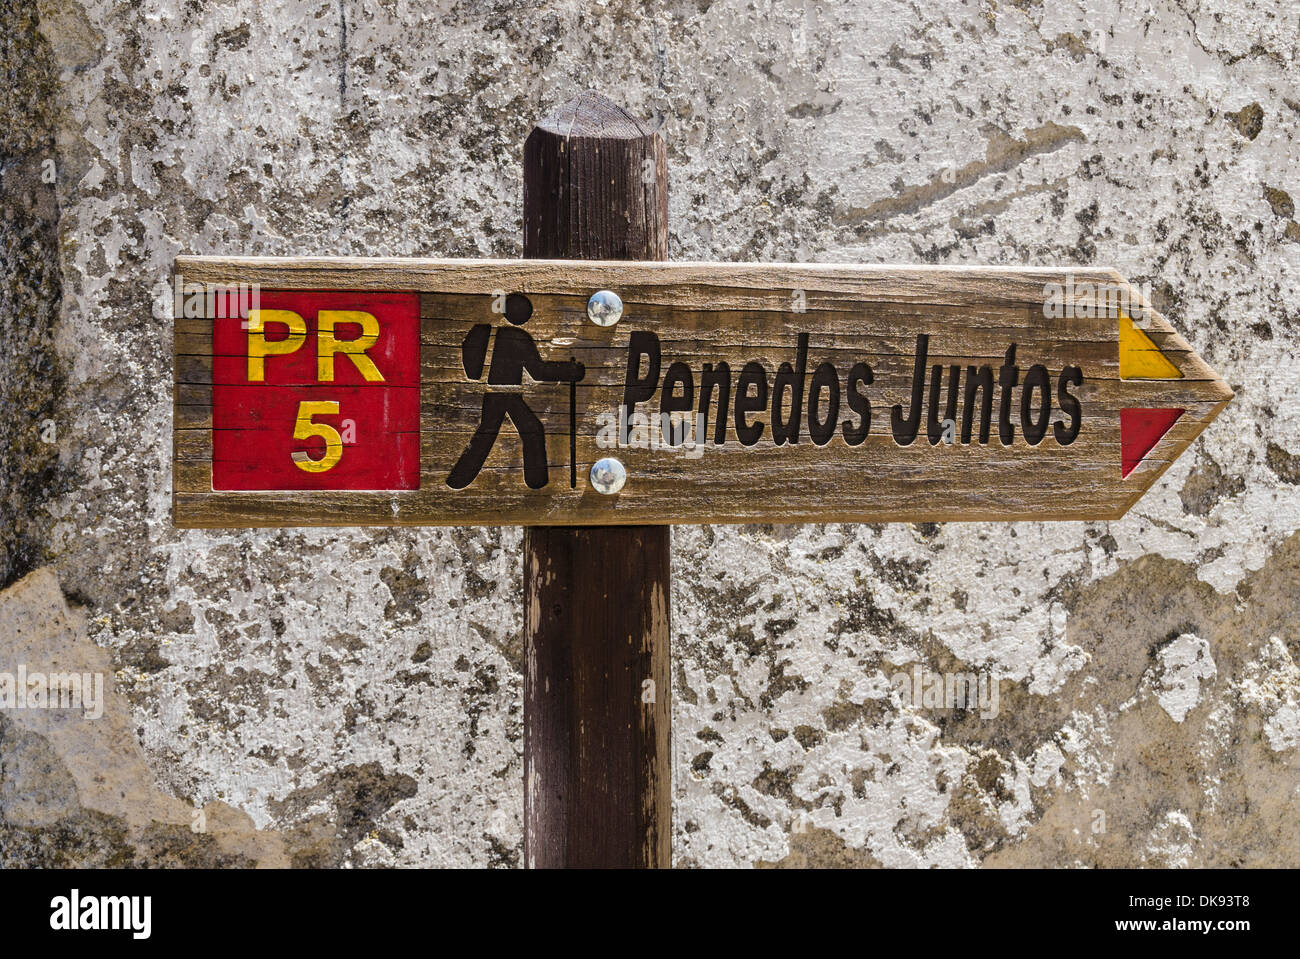 Signer pour le sentier des rochers, un circuit de marche à Monsanto, Portugal Banque D'Images